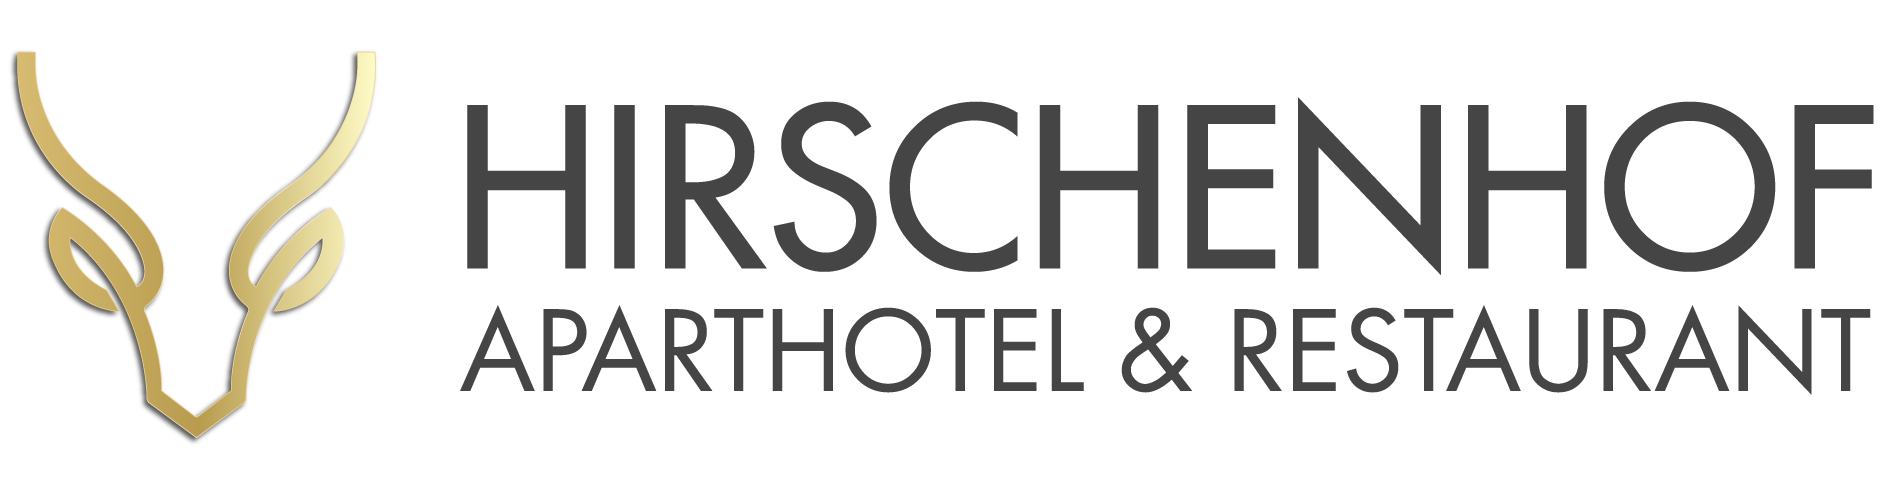 Hirschenhof Aparthotel & Restaurant